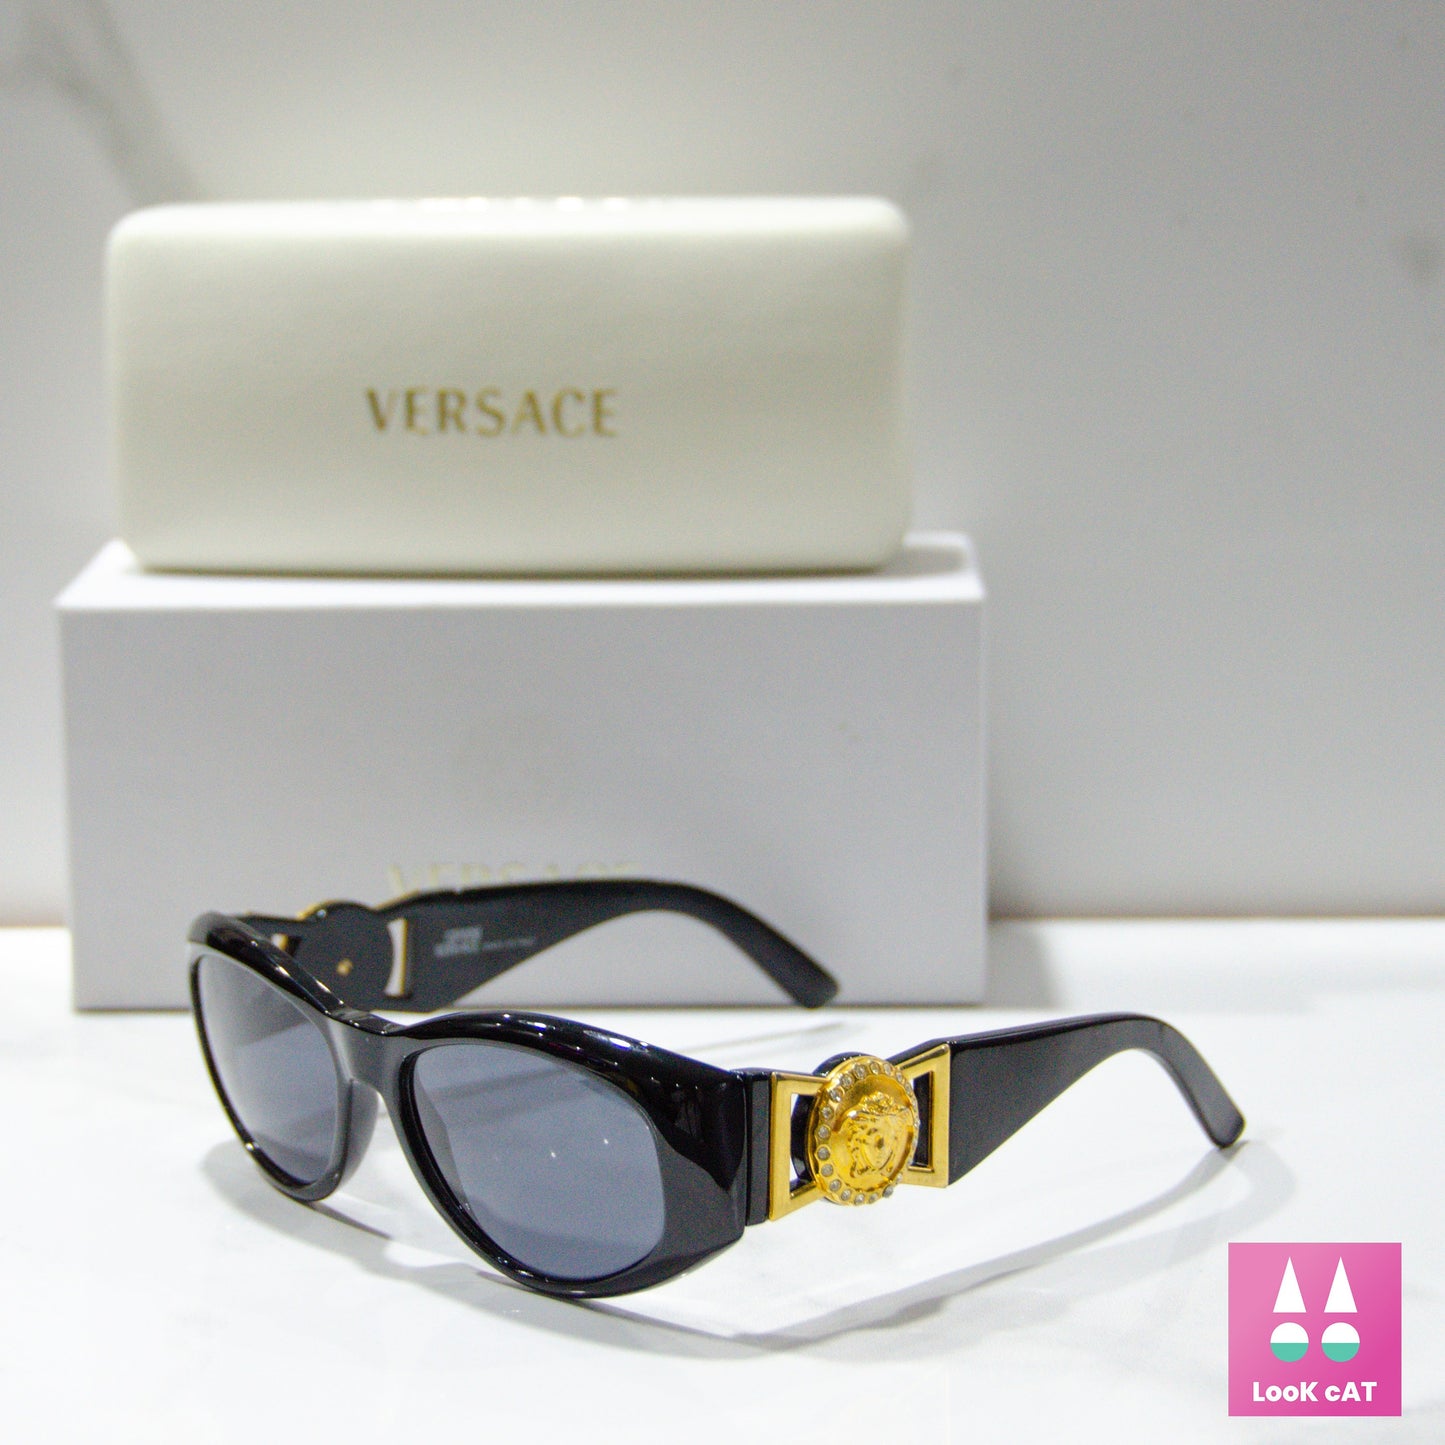 Occhiali da sole Gianni Versace mod 424 strass lunette brille occhiali sole gafas